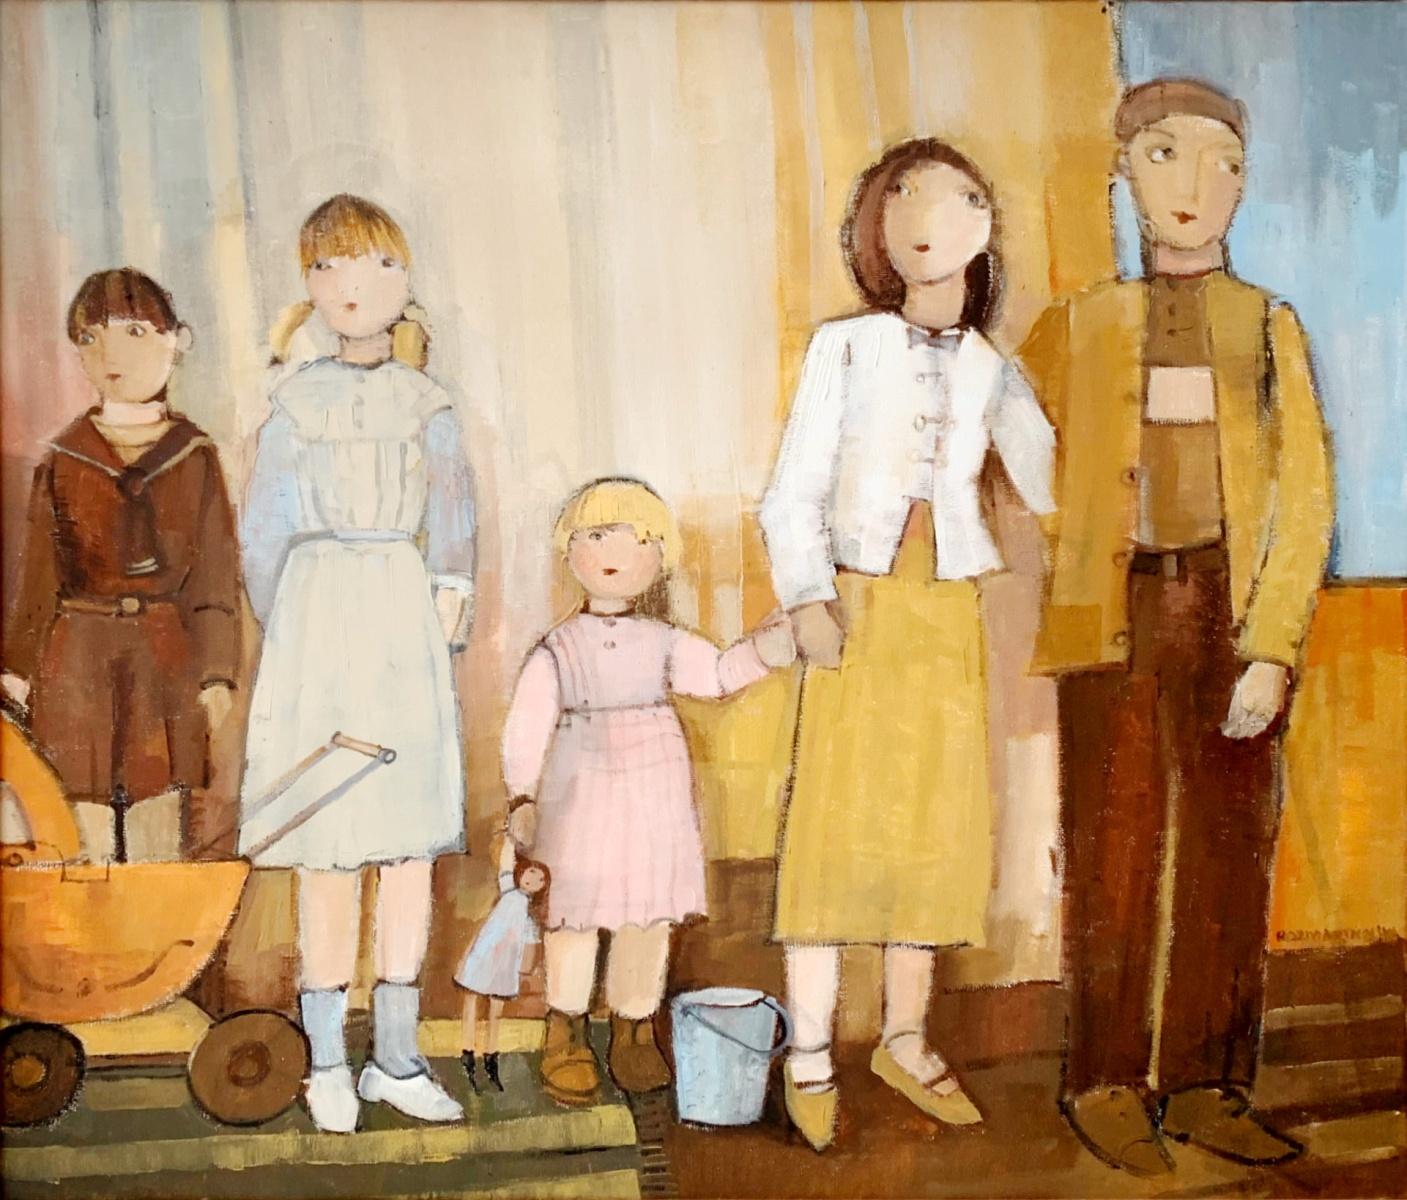 Une famille. Peinture à l'huile figurative contemporaine, couleurs WARM, artiste polonais